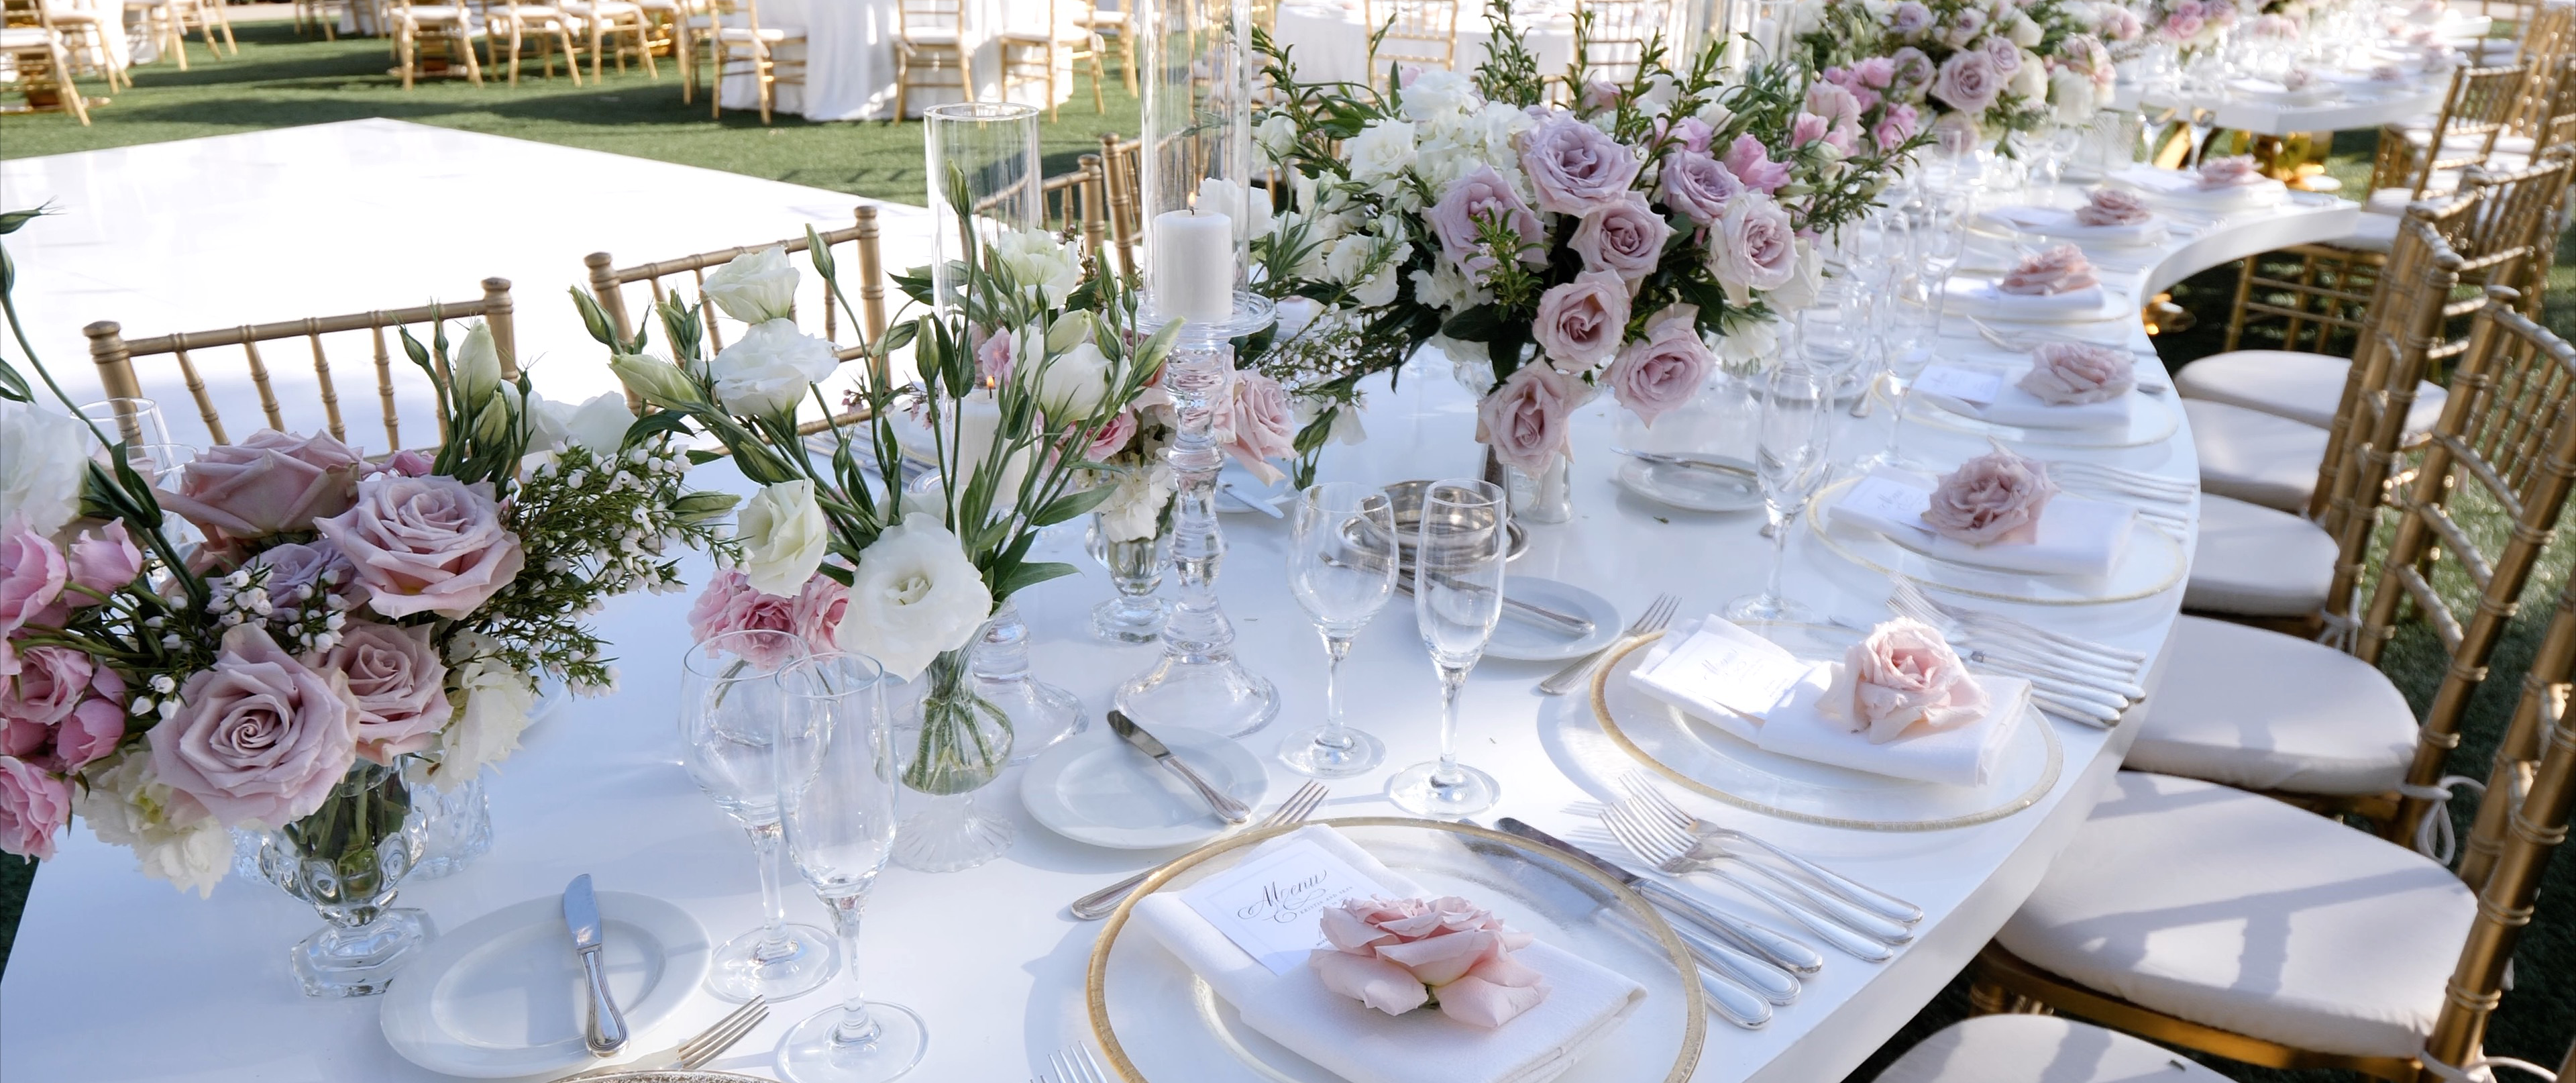 Hyatt Aviara Wedding Tables